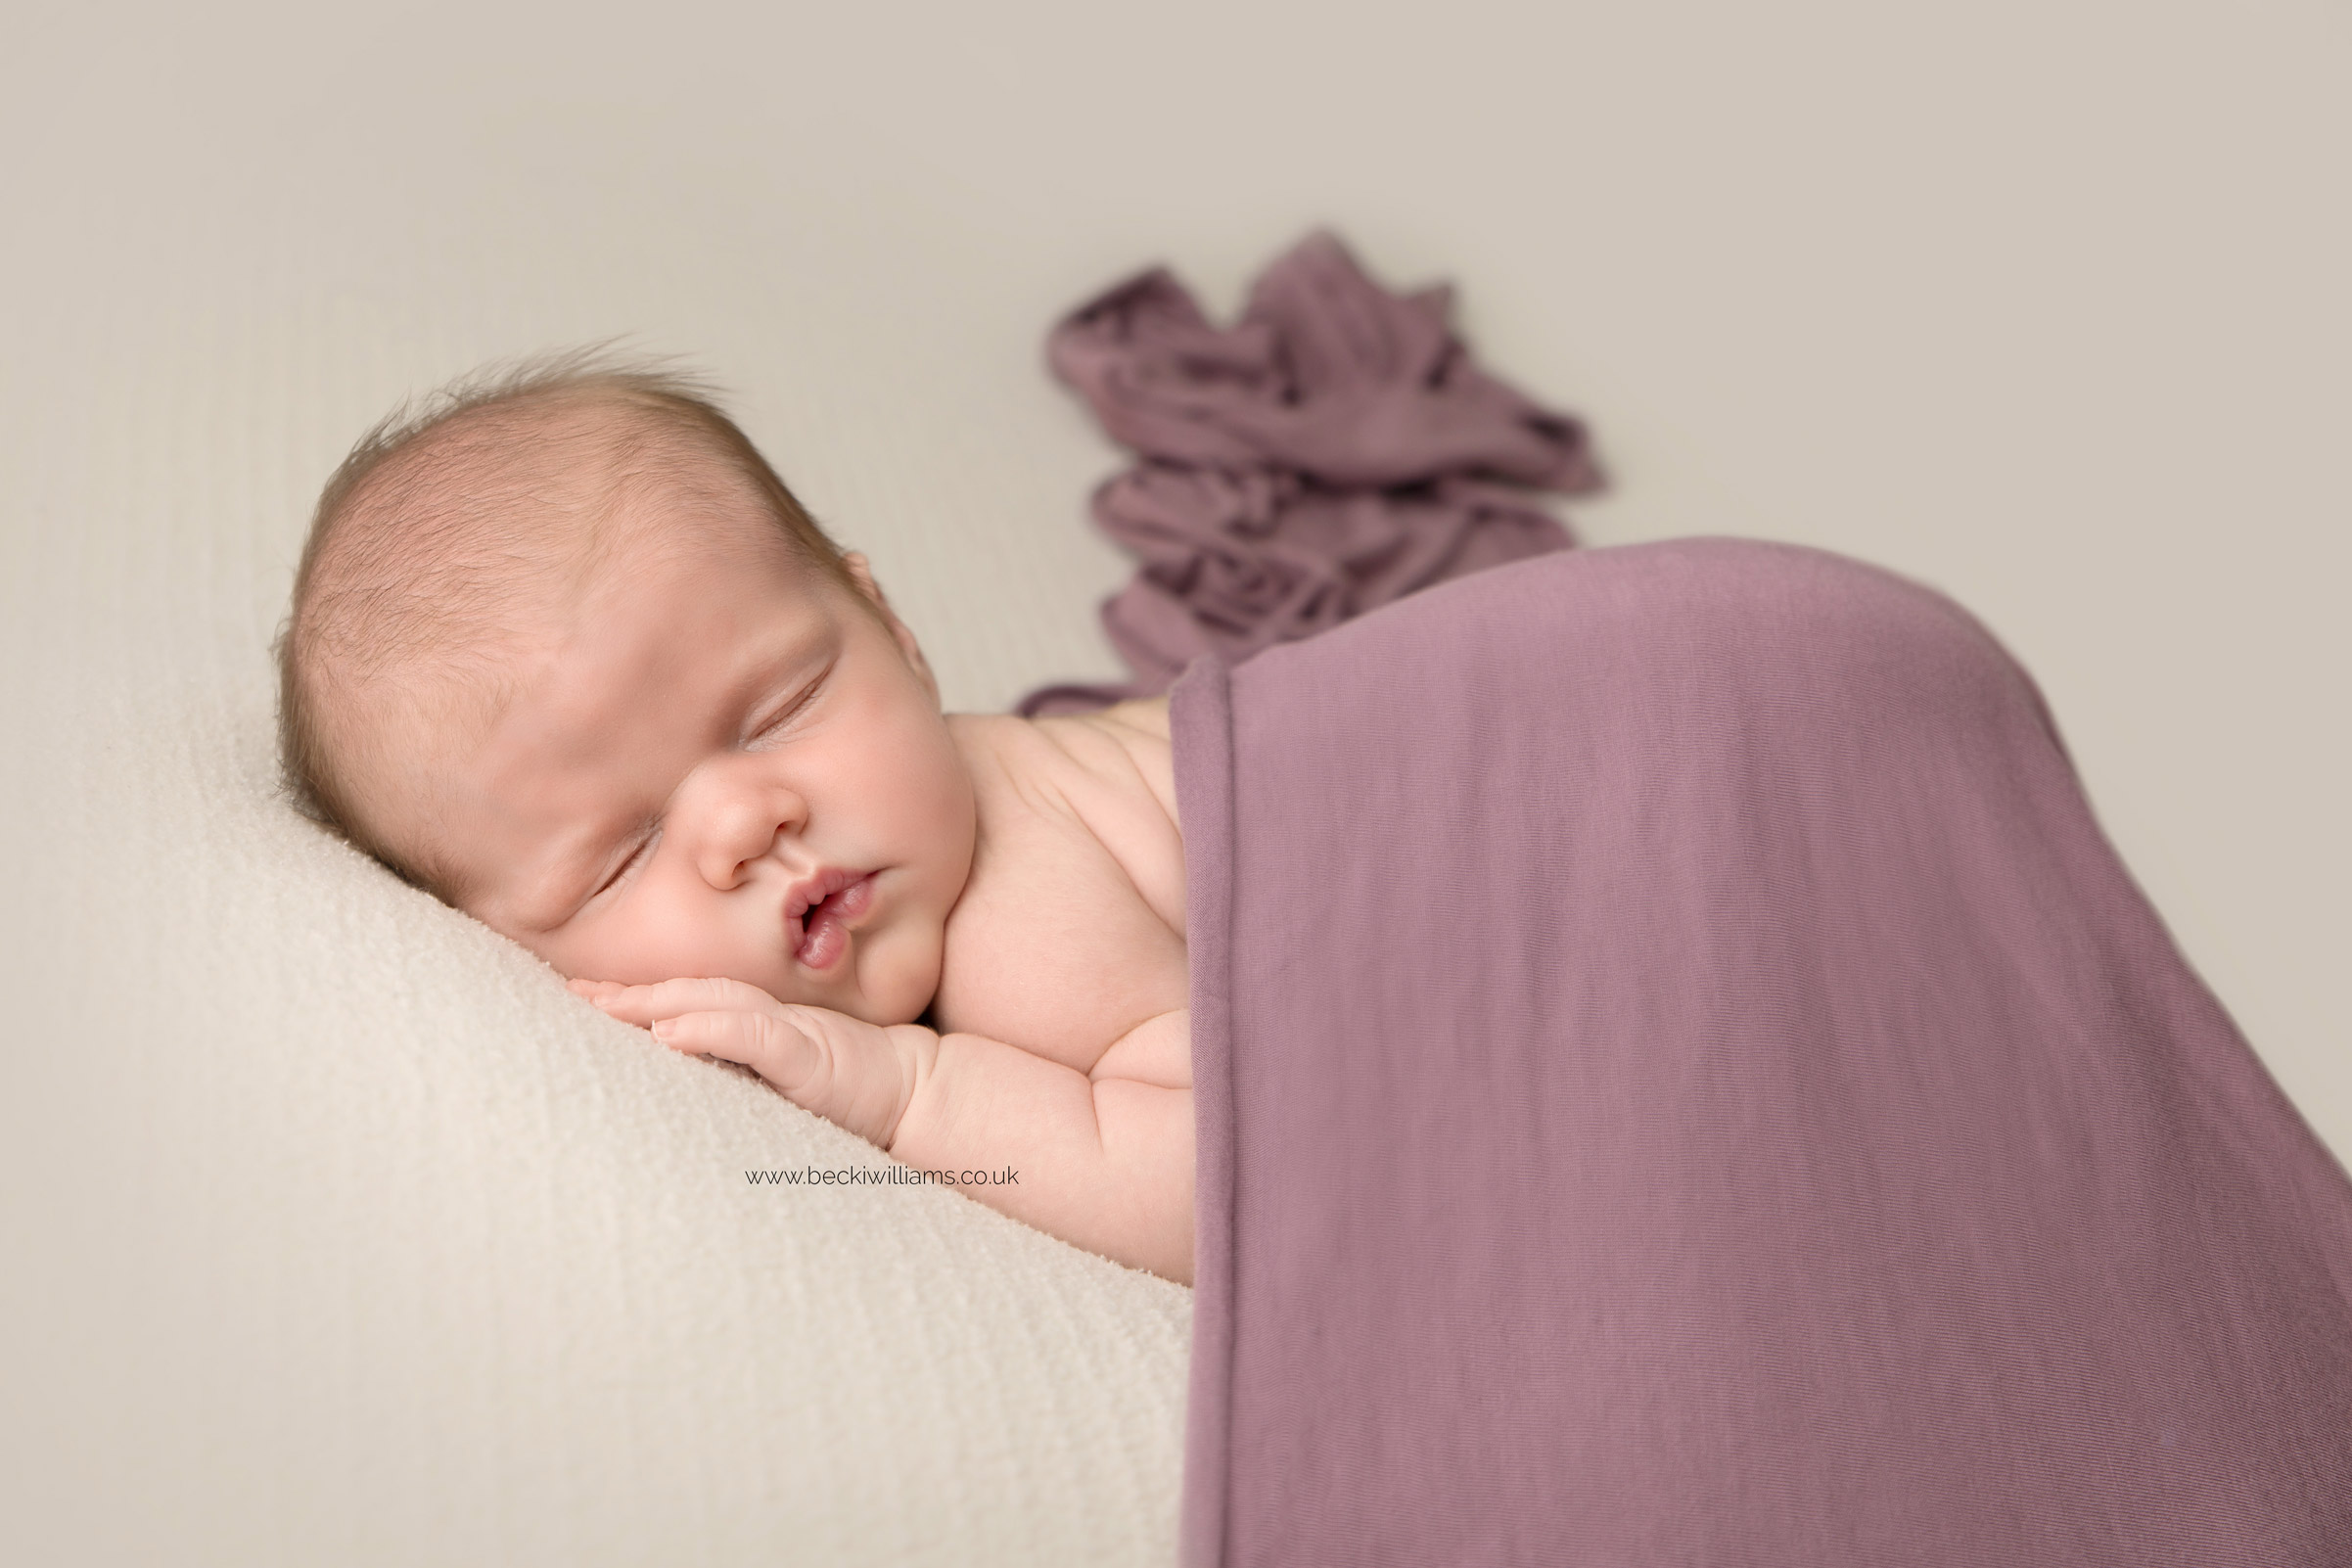 photographer-in-hemel-hempstead-newborn-baby-girl-asleep-22.jpg